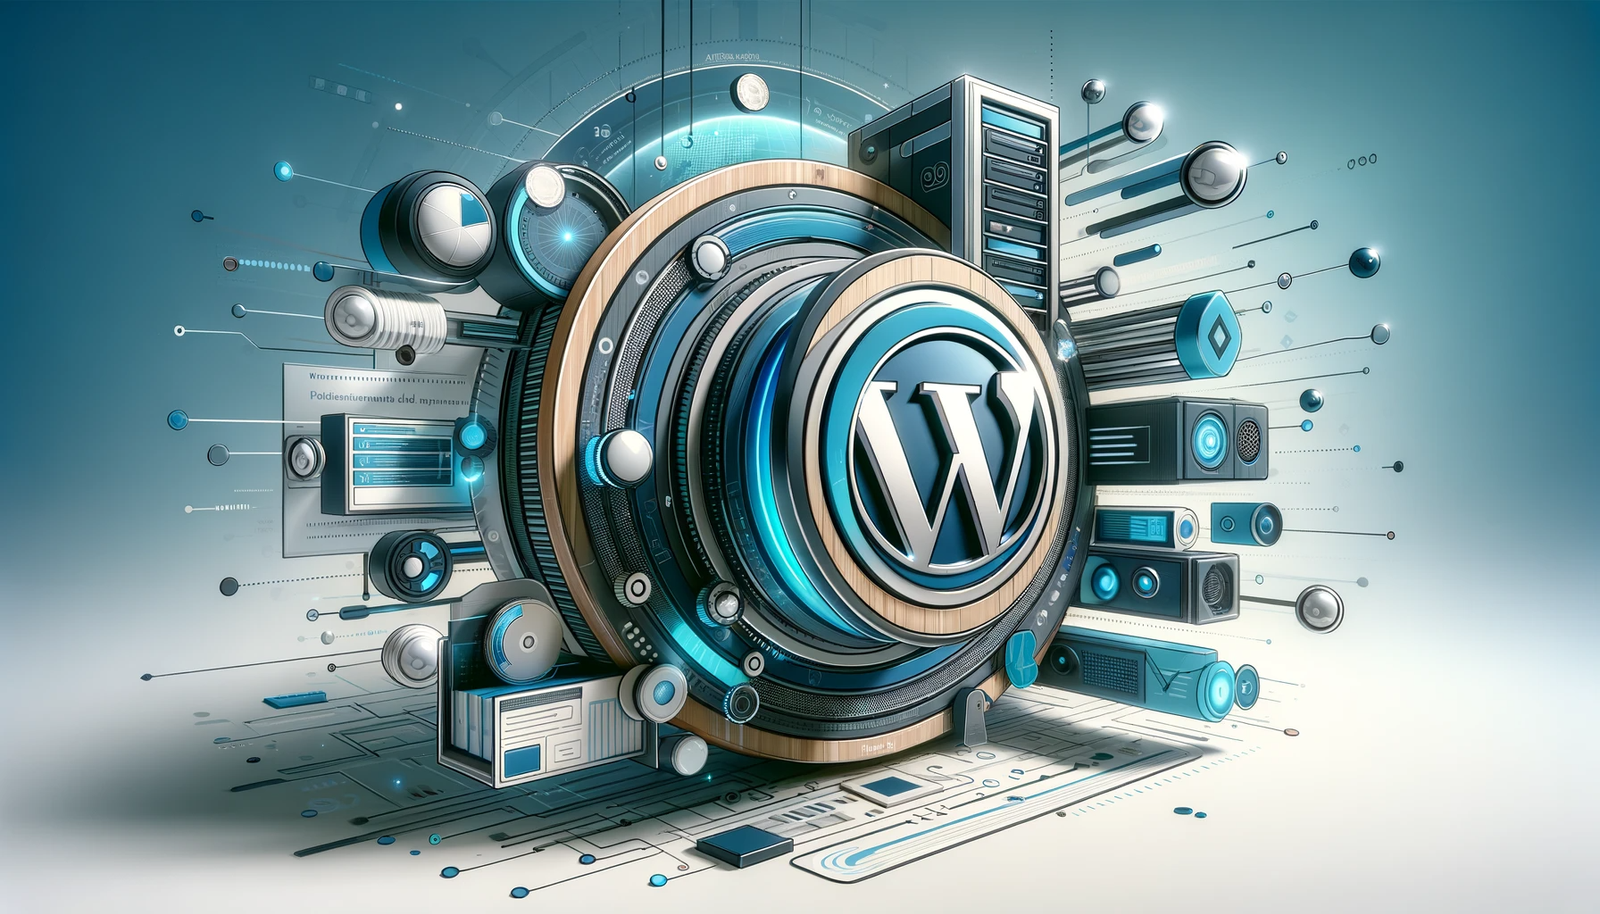 Ein horizontales Bild, das Terraherz WordPress darstellt, betont moderne Webtechnologie und Hosting. Das Design kombiniert Blau, Silber und Grün, symbolisiert hochmoderne digitale Umgebungen und integriert subtil das WordPress-Logo.